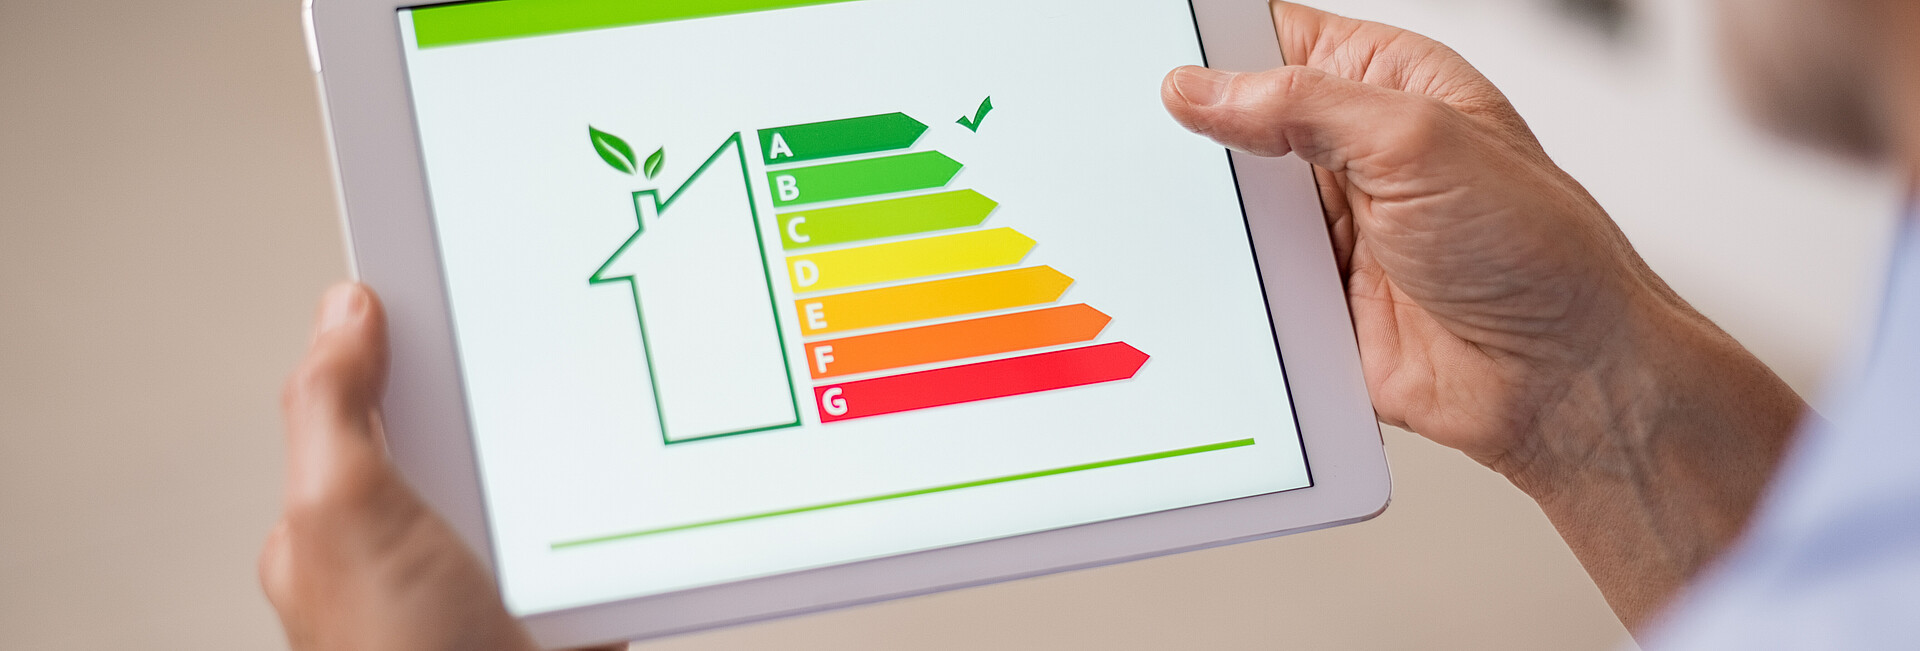 Symbolbild Gebäudeenergieeffizienz; Ein Mann hat ein Tablet in der Hand, auf dem ein Gebäude mit Energielabel zu sehen ist.